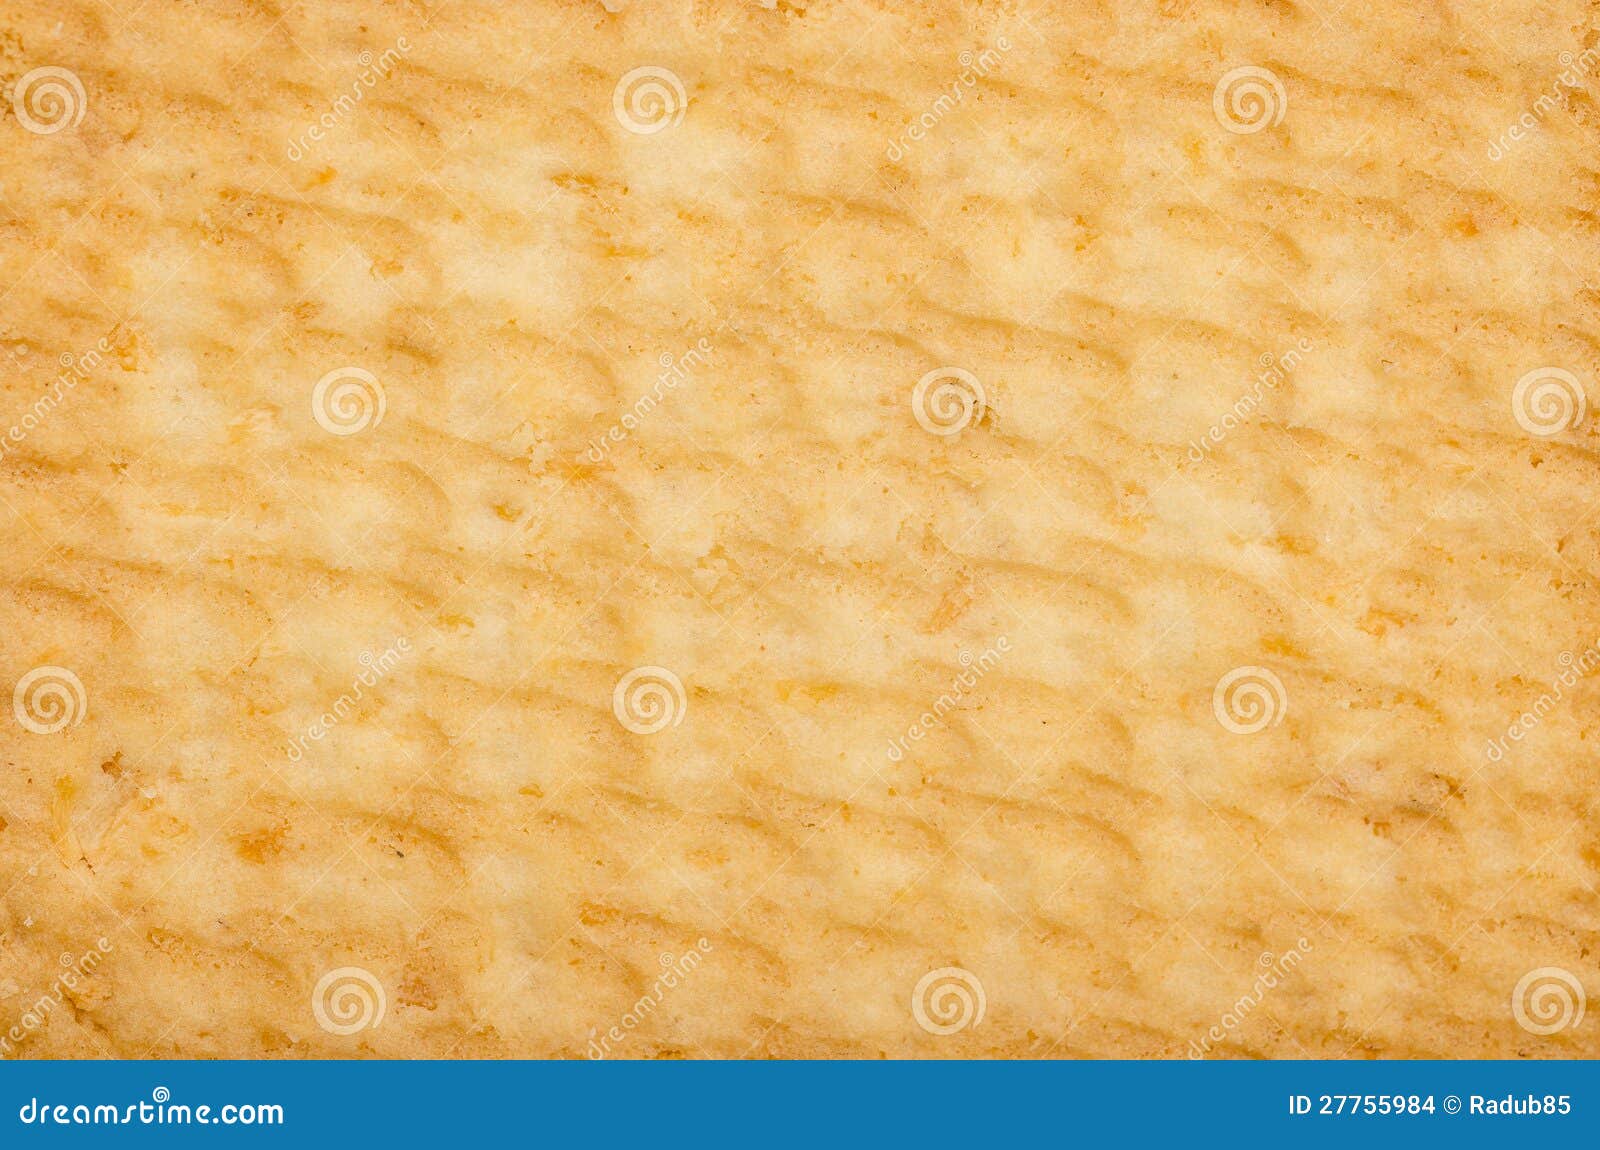 biscuit texture